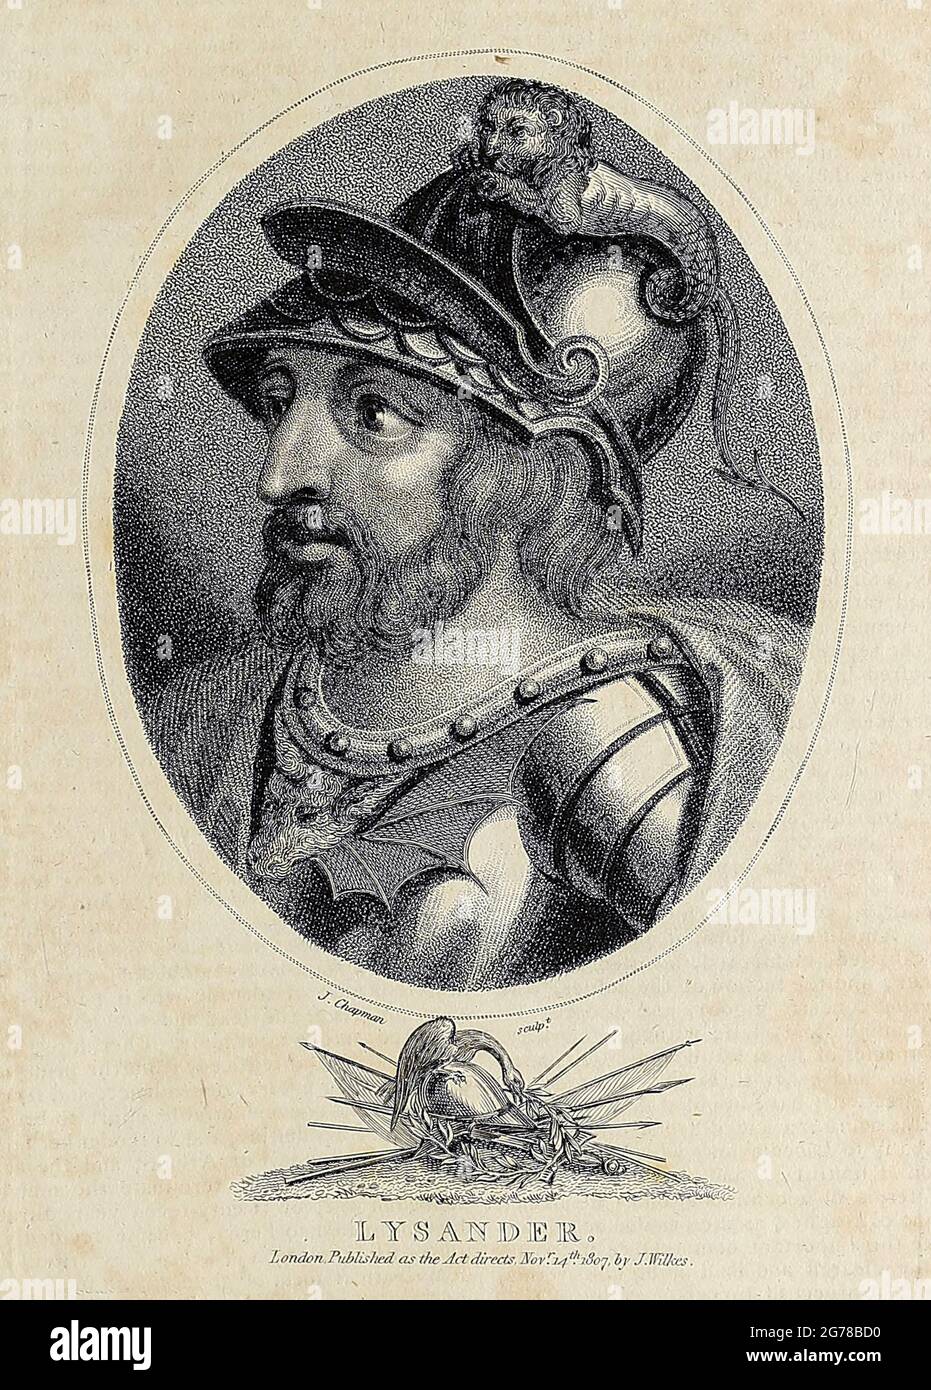 Lysander (morì il 395 a.C.) fu un ammiraglio spartano che comandò la flotta spartana nell'Hellespont, che sconfisse gli ateniesi ad Aegospotami nel 405 a.C. L'anno successivo, fu in grado di costringere gli ateniesi a capitolare, mettendo fine alla guerra del Peloponneso. Egli ebbe poi un ruolo chiave nella dominazione greca di Sparta per il prossimo decennio fino alla sua morte nella battaglia di Haliartus. Incisione su copperplate dell'Enciclopedia Londinensis OR, dizionario universale delle arti, delle scienze e della letteratura; Volume VIII; a cura di Wilkes, Giovanni. Pubblicato a Londra nel 1810. Foto Stock